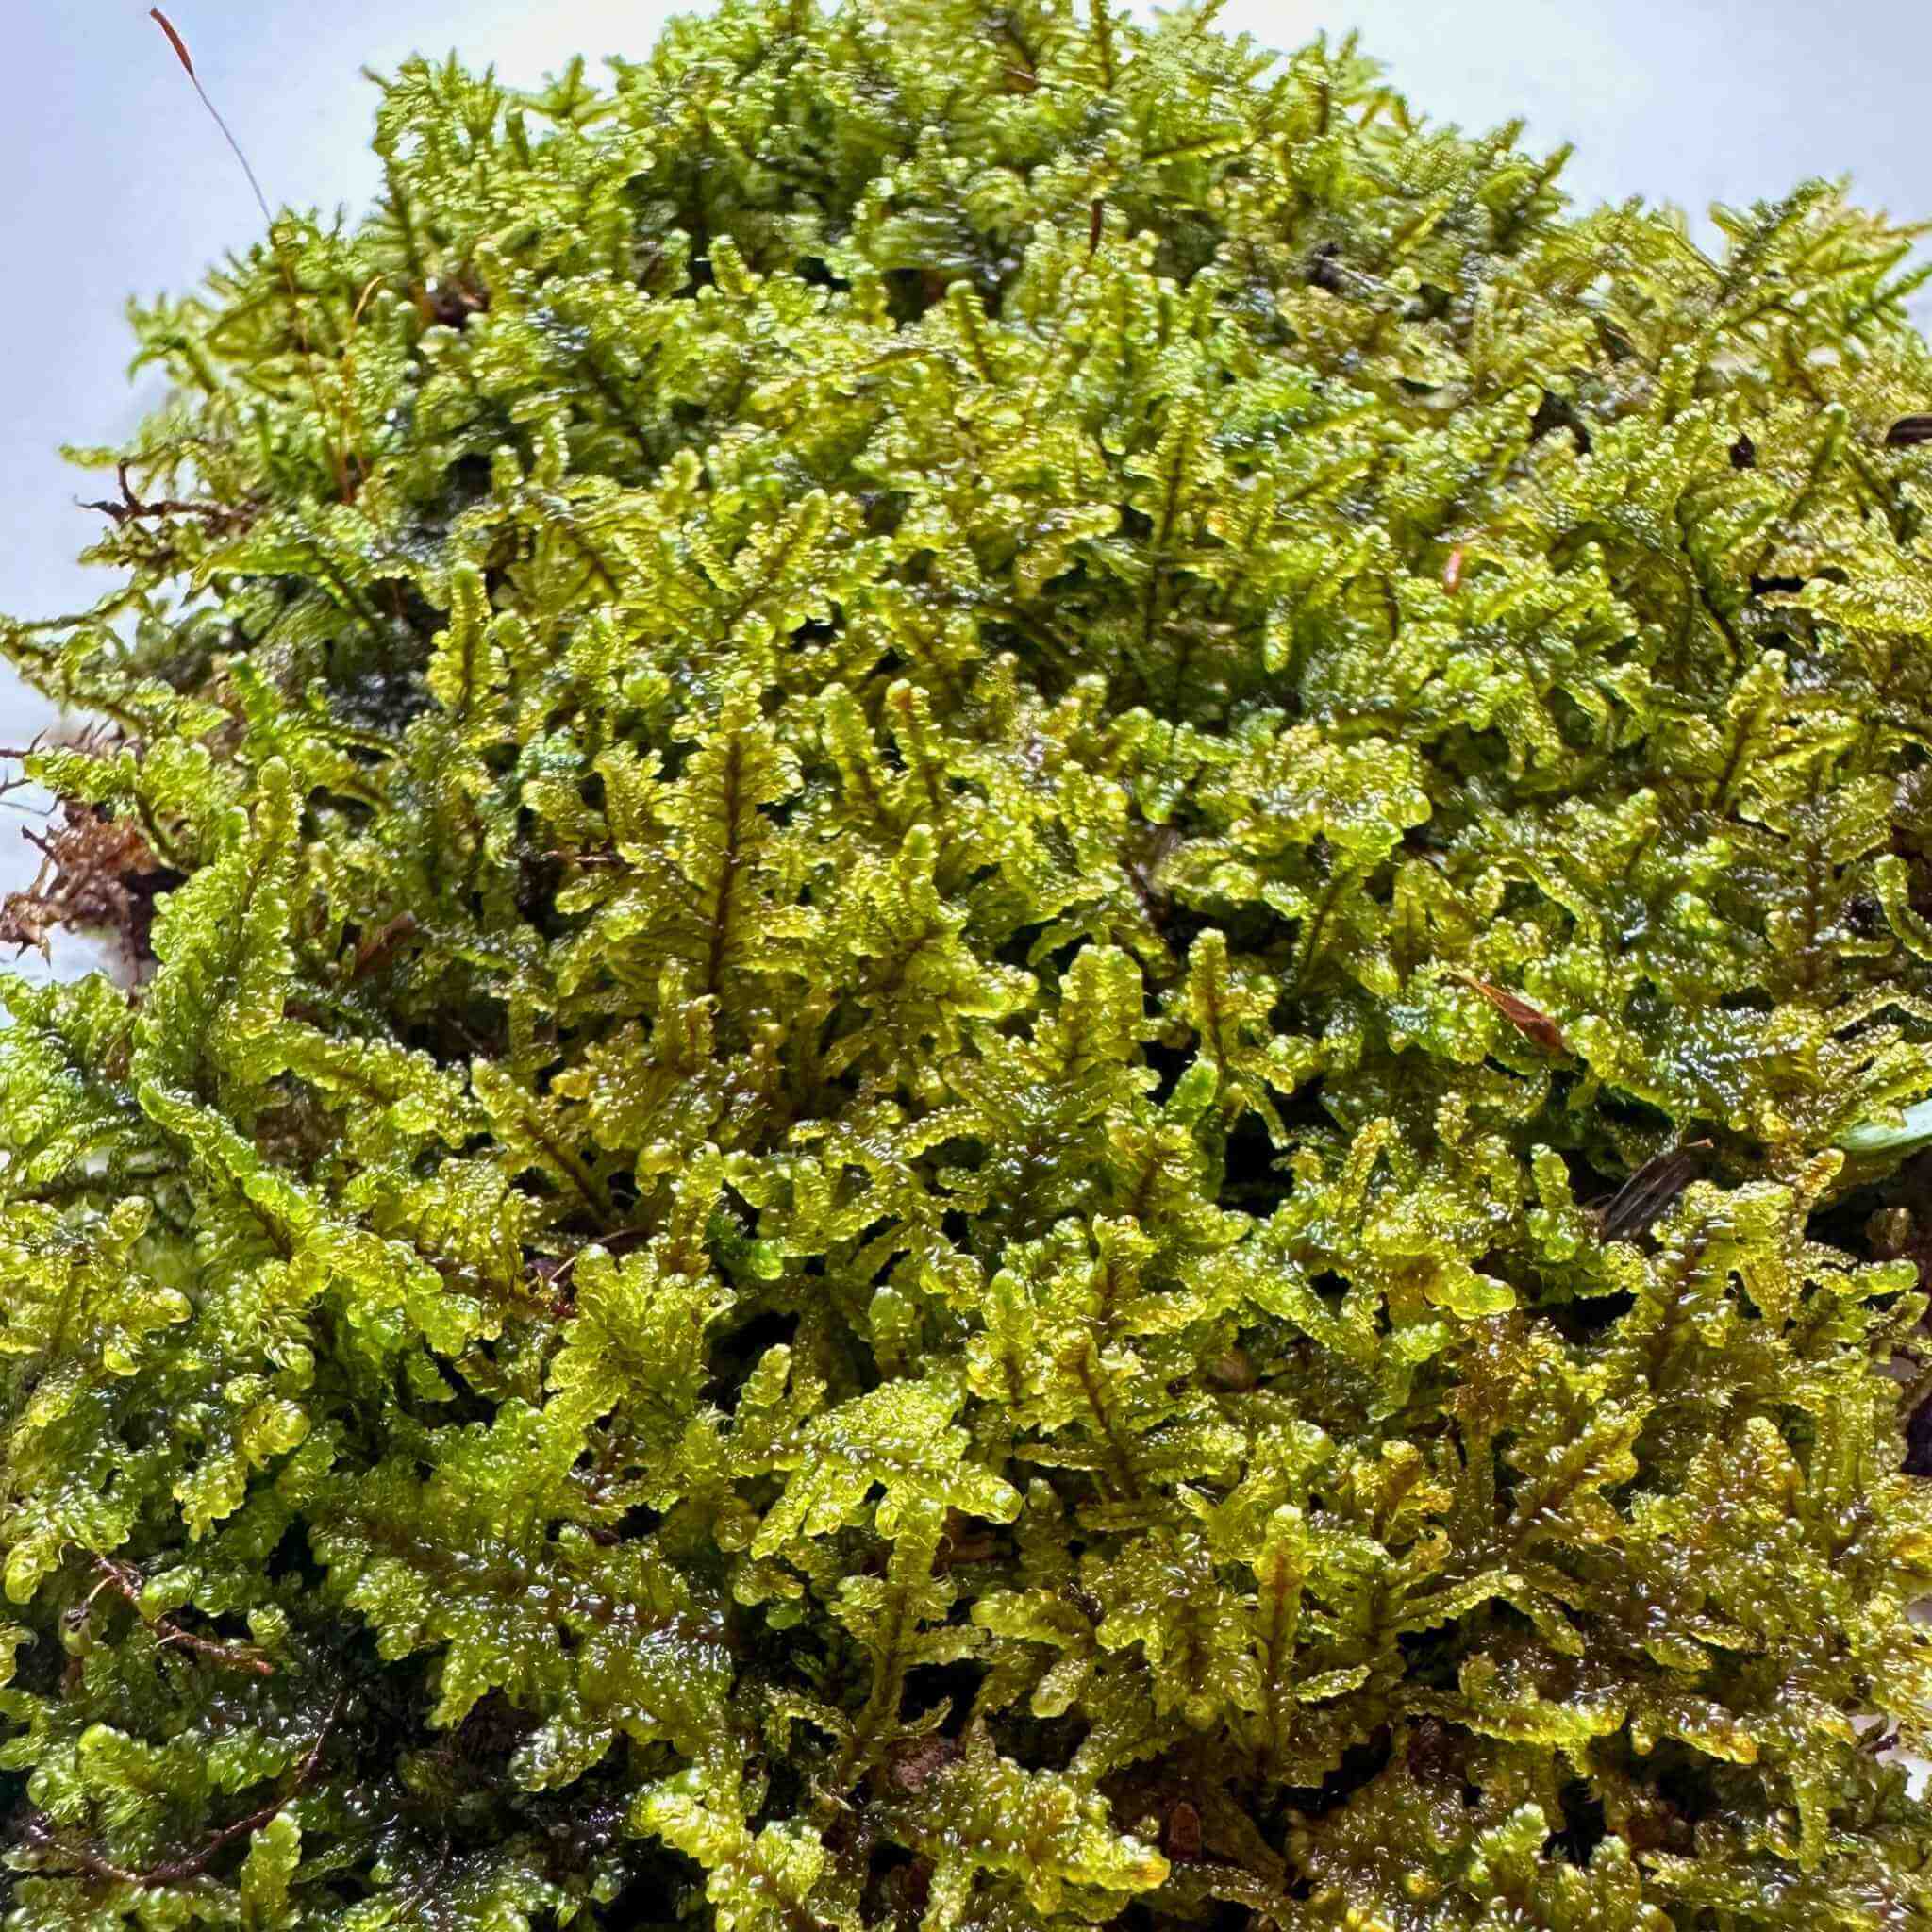 Live Sheet Moss (Hypnum Moss)